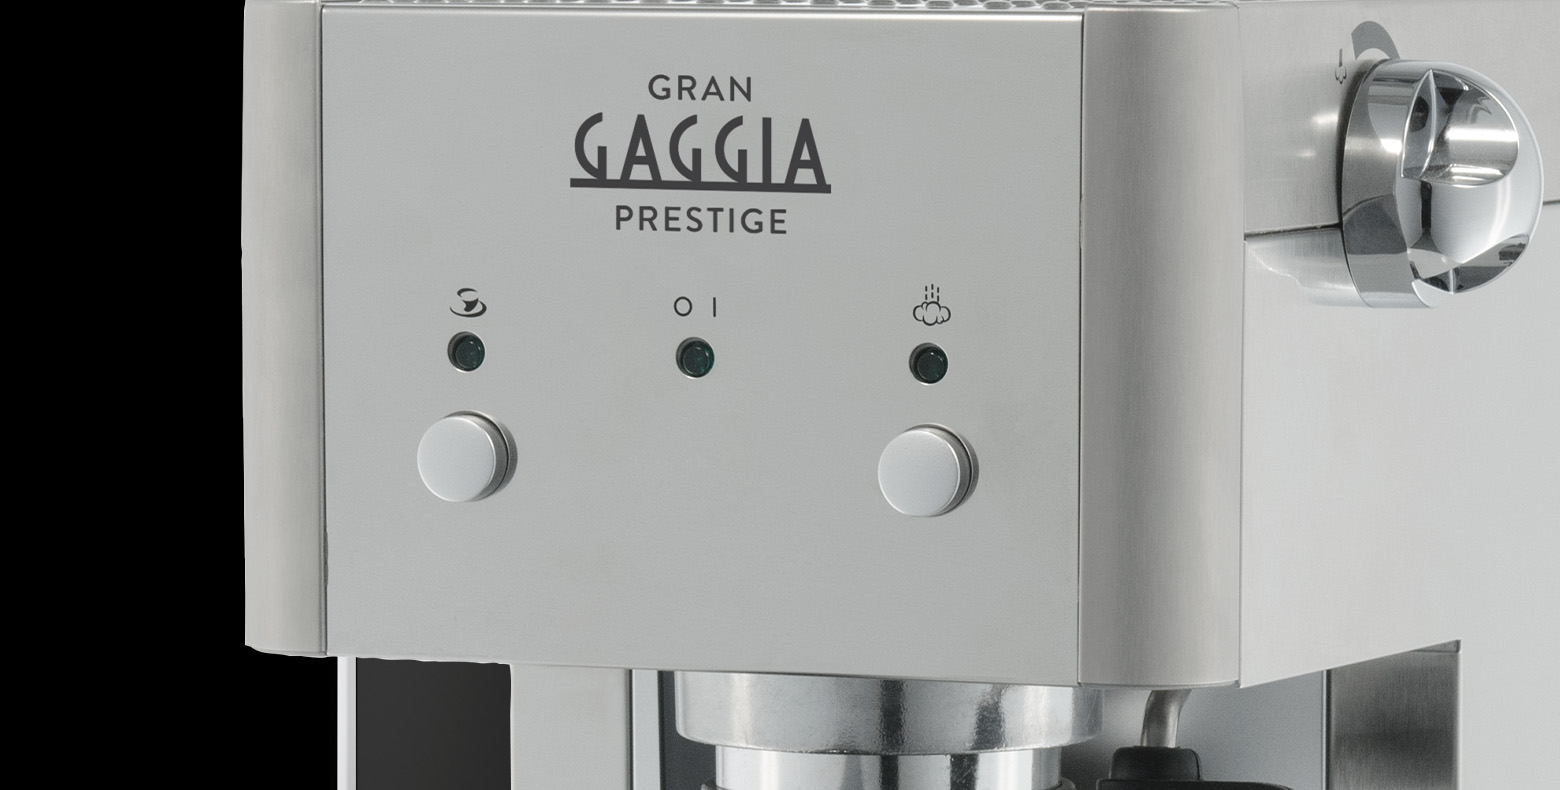 GRAN GAGGIA PRESTIGE - Gaggia